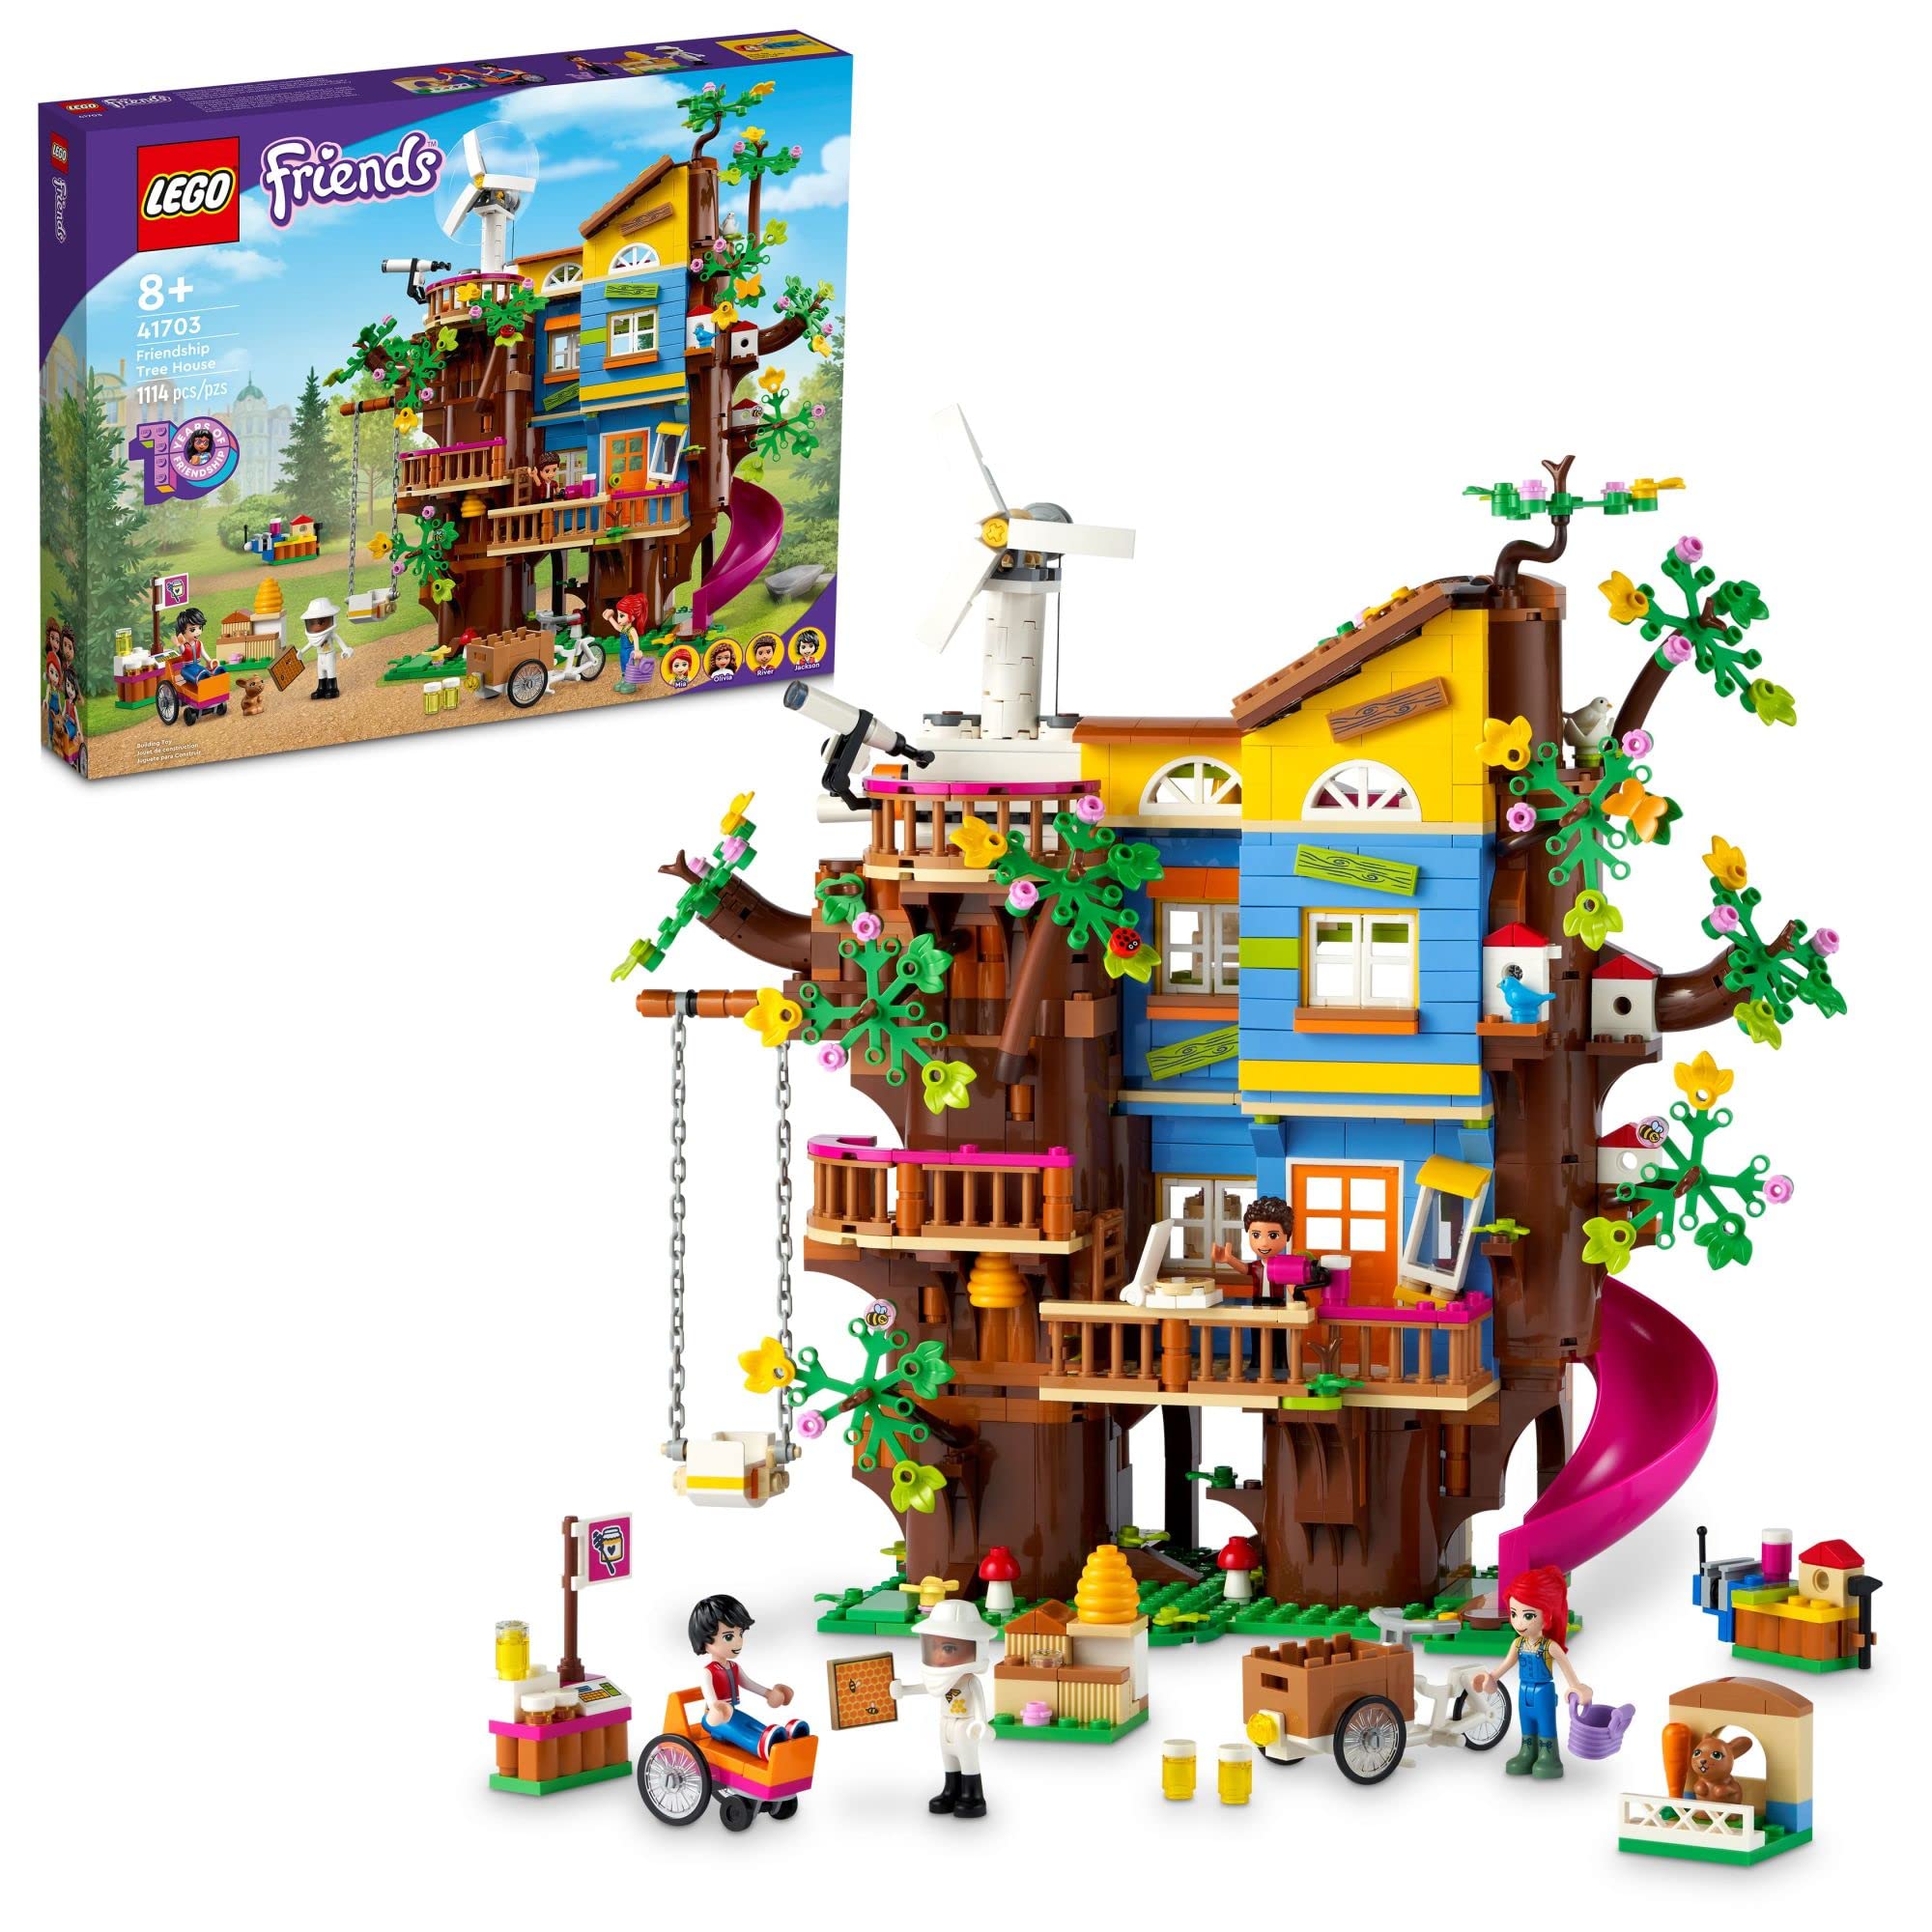  LEGO Casa na Árvore da Amizade para Amigos 41703 Kit de Construção; Idéia divertida de presente de aniversário para crianças com mais de 8 anos que se preocupam com o meio ambiente e gostam de...